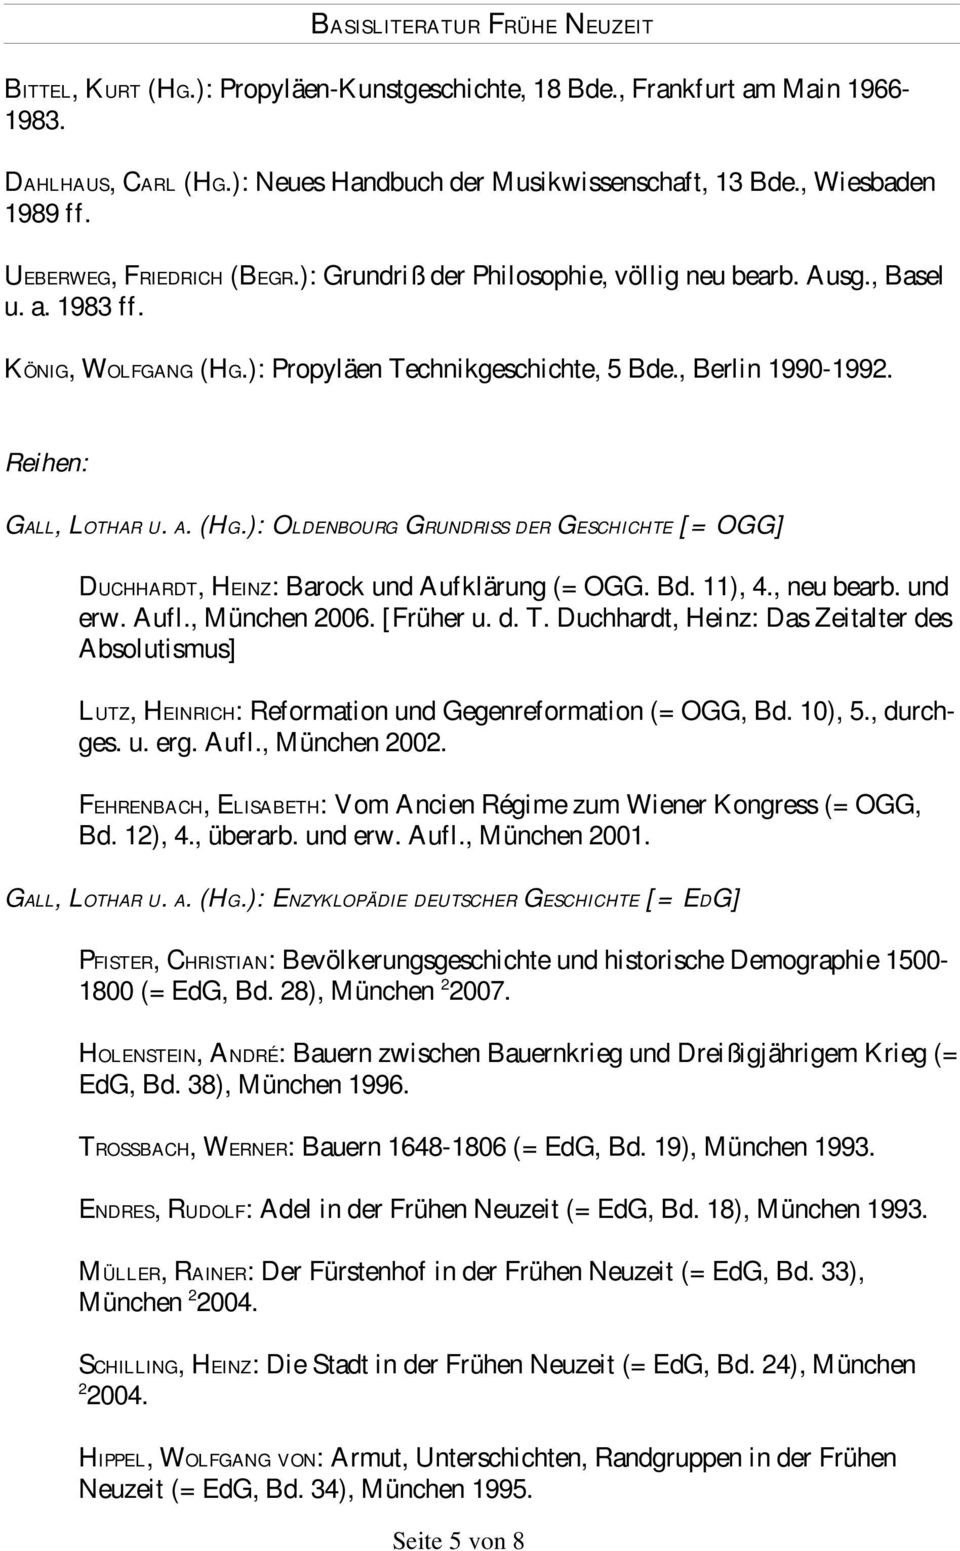 Bd. 11), 4., neu bearb. und erw. Aufl., München 2006. [Früher u. d. T. Duchhardt, Heinz: Das Zeitalter des Absolutismus] LUTZ, HEINRICH: Reformation und Gegenreformation (= OGG, Bd. 10), 5., durchges.